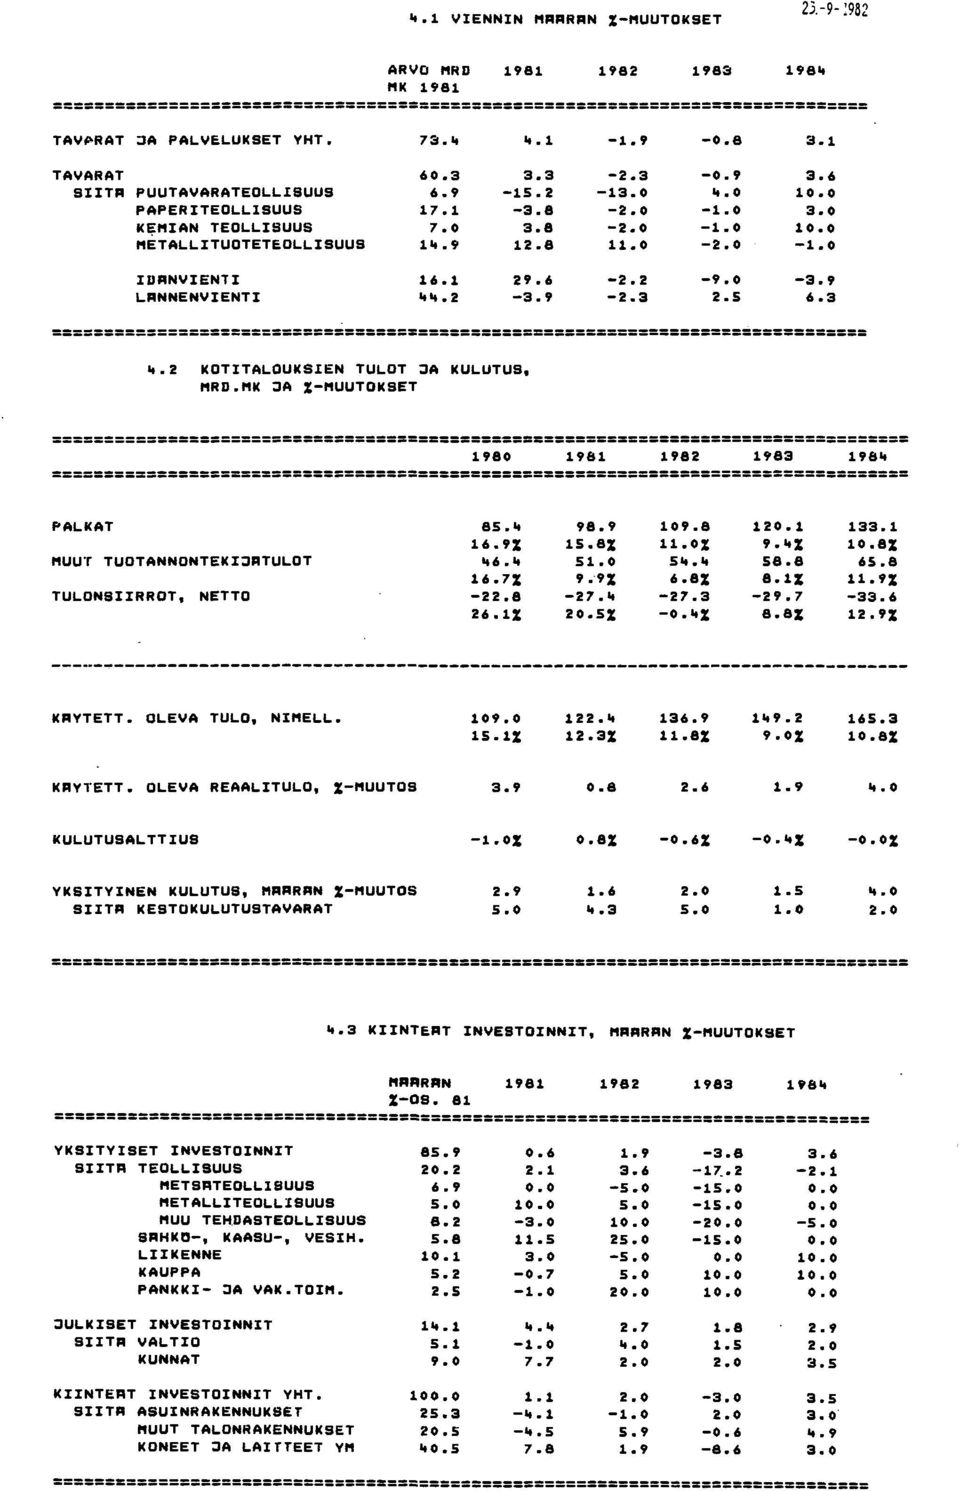 MRD.MK ;JA %MUUTOKSET ========= 1980 1981 1982 1983 198" ========= PALKAT 85." 98.9 109.8 120.1 133.1 16.9% 15.8% 11.0% 9."% 10.8% MUUT TUOTANNONTEKI;JATULOT "6." 51.0 5"." 58.8 65.8 16.7% 9.9% 6.